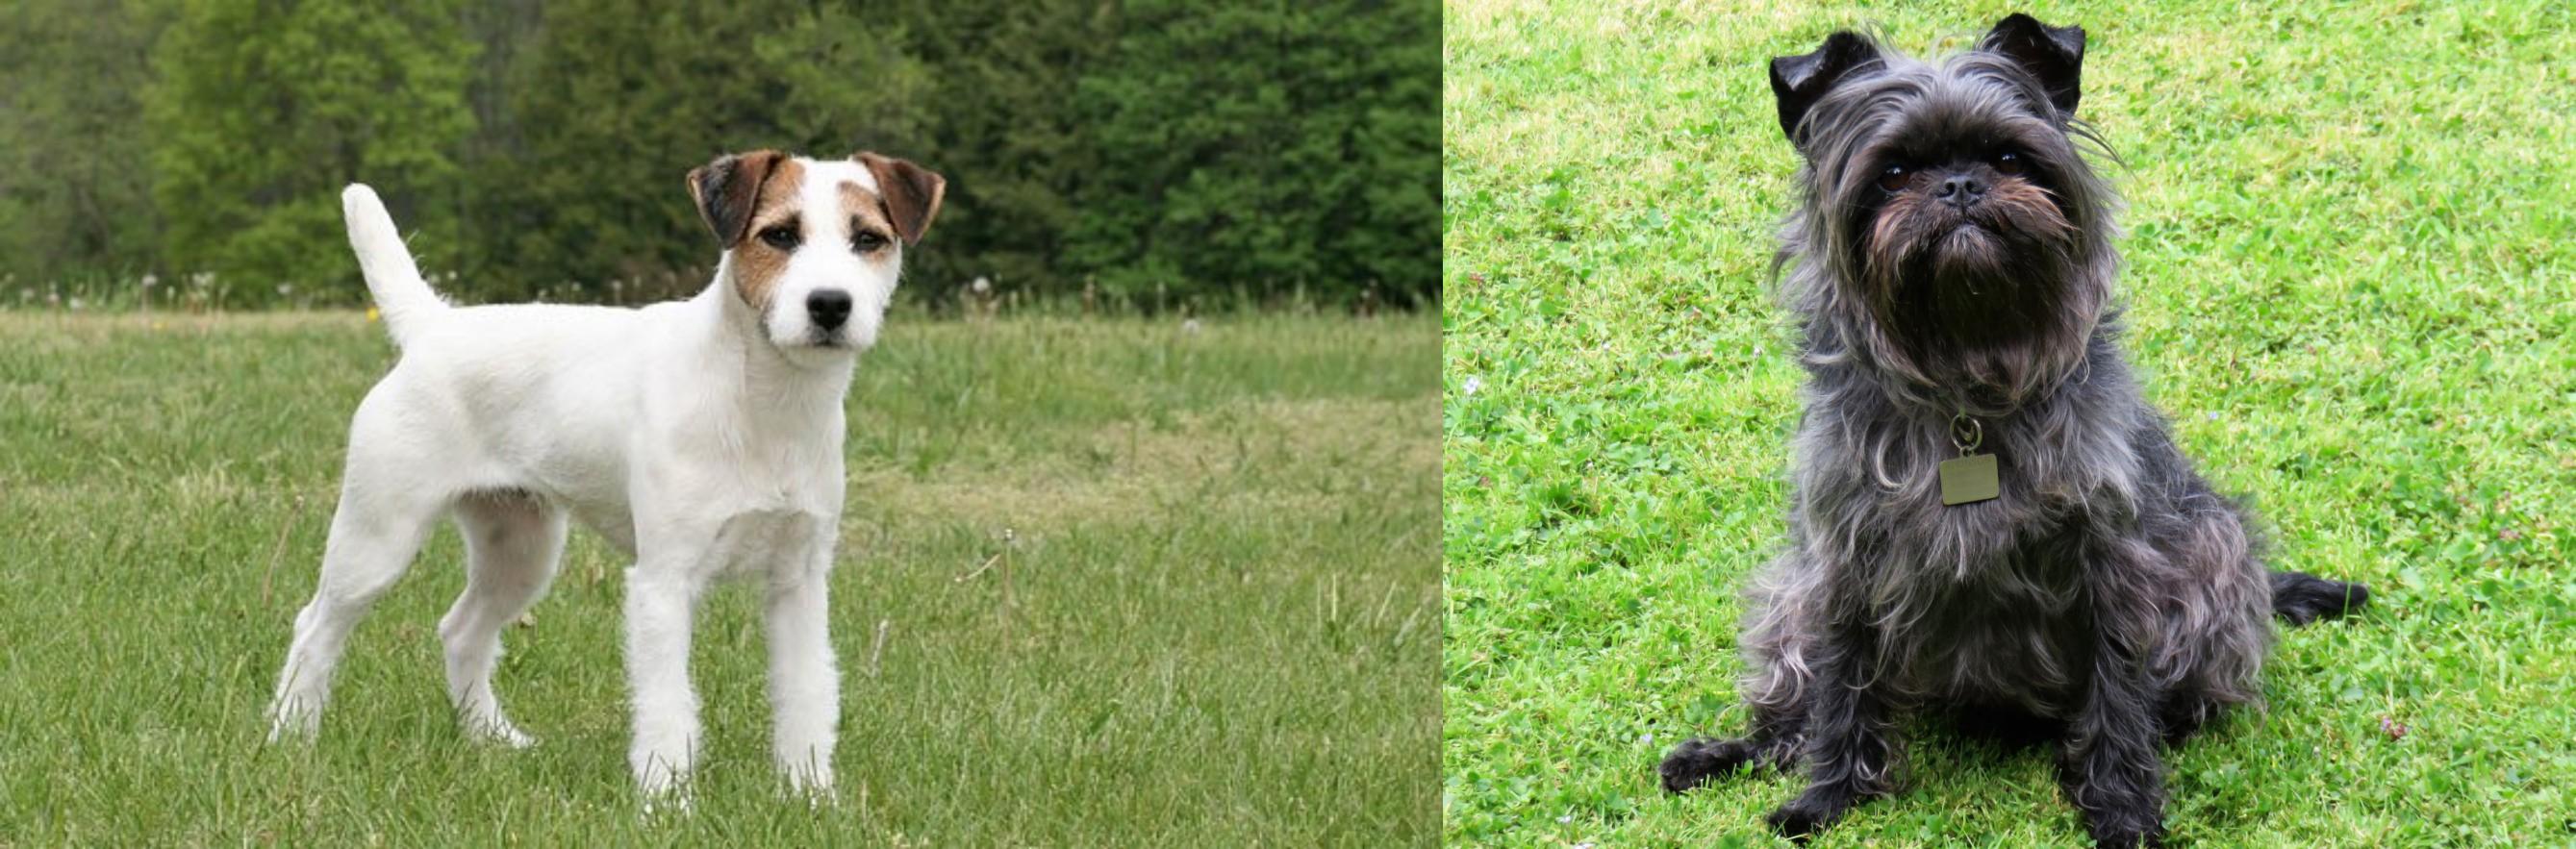 Jack Russell Terrier Vs Affenpinscher Breed Comparison